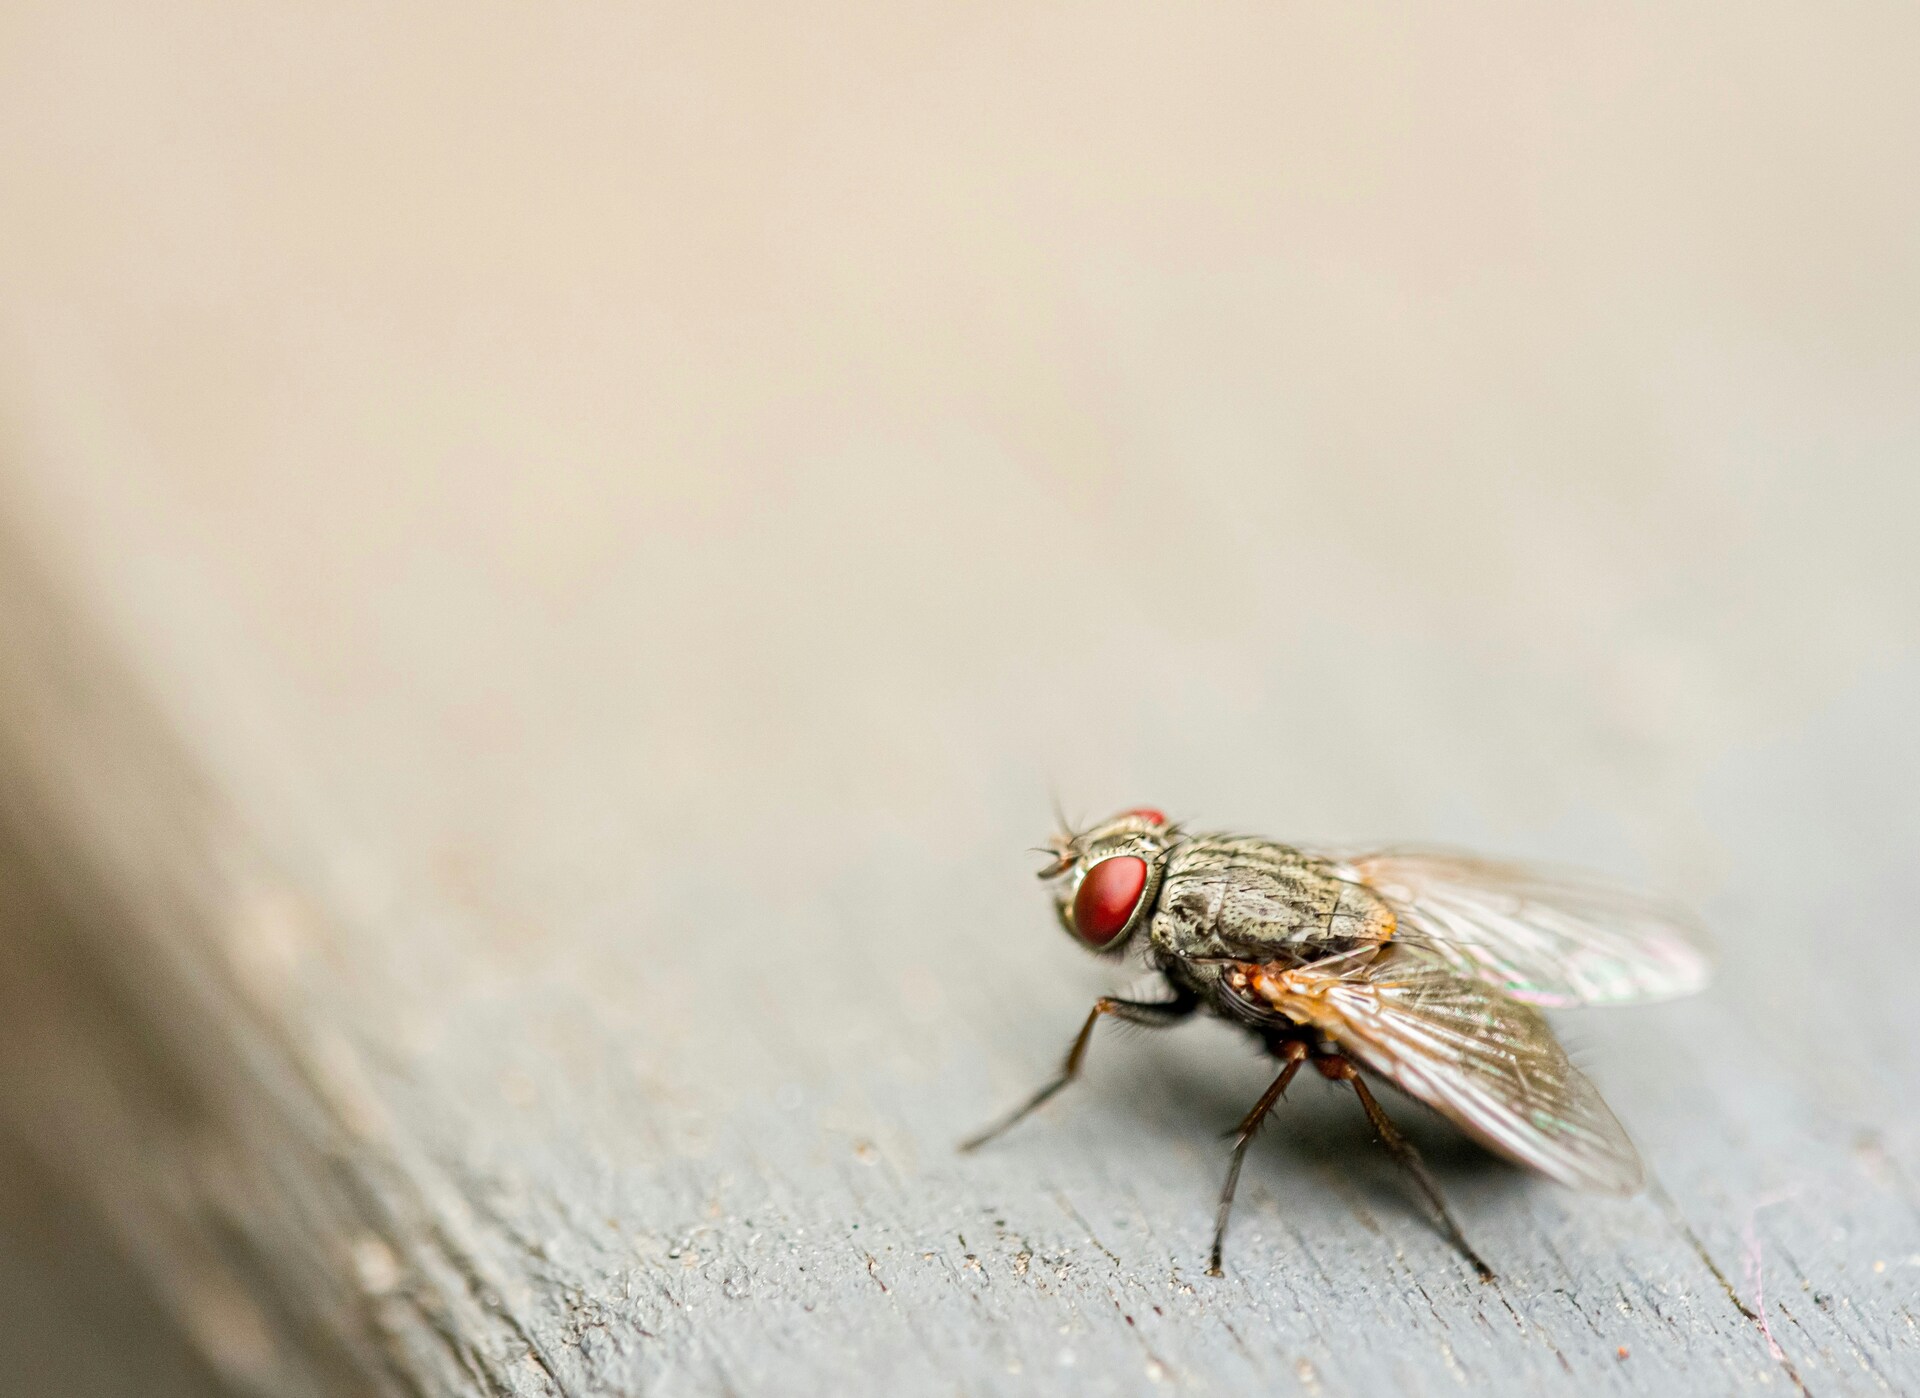 СМИ: в России появилась опасная муха-кровососка